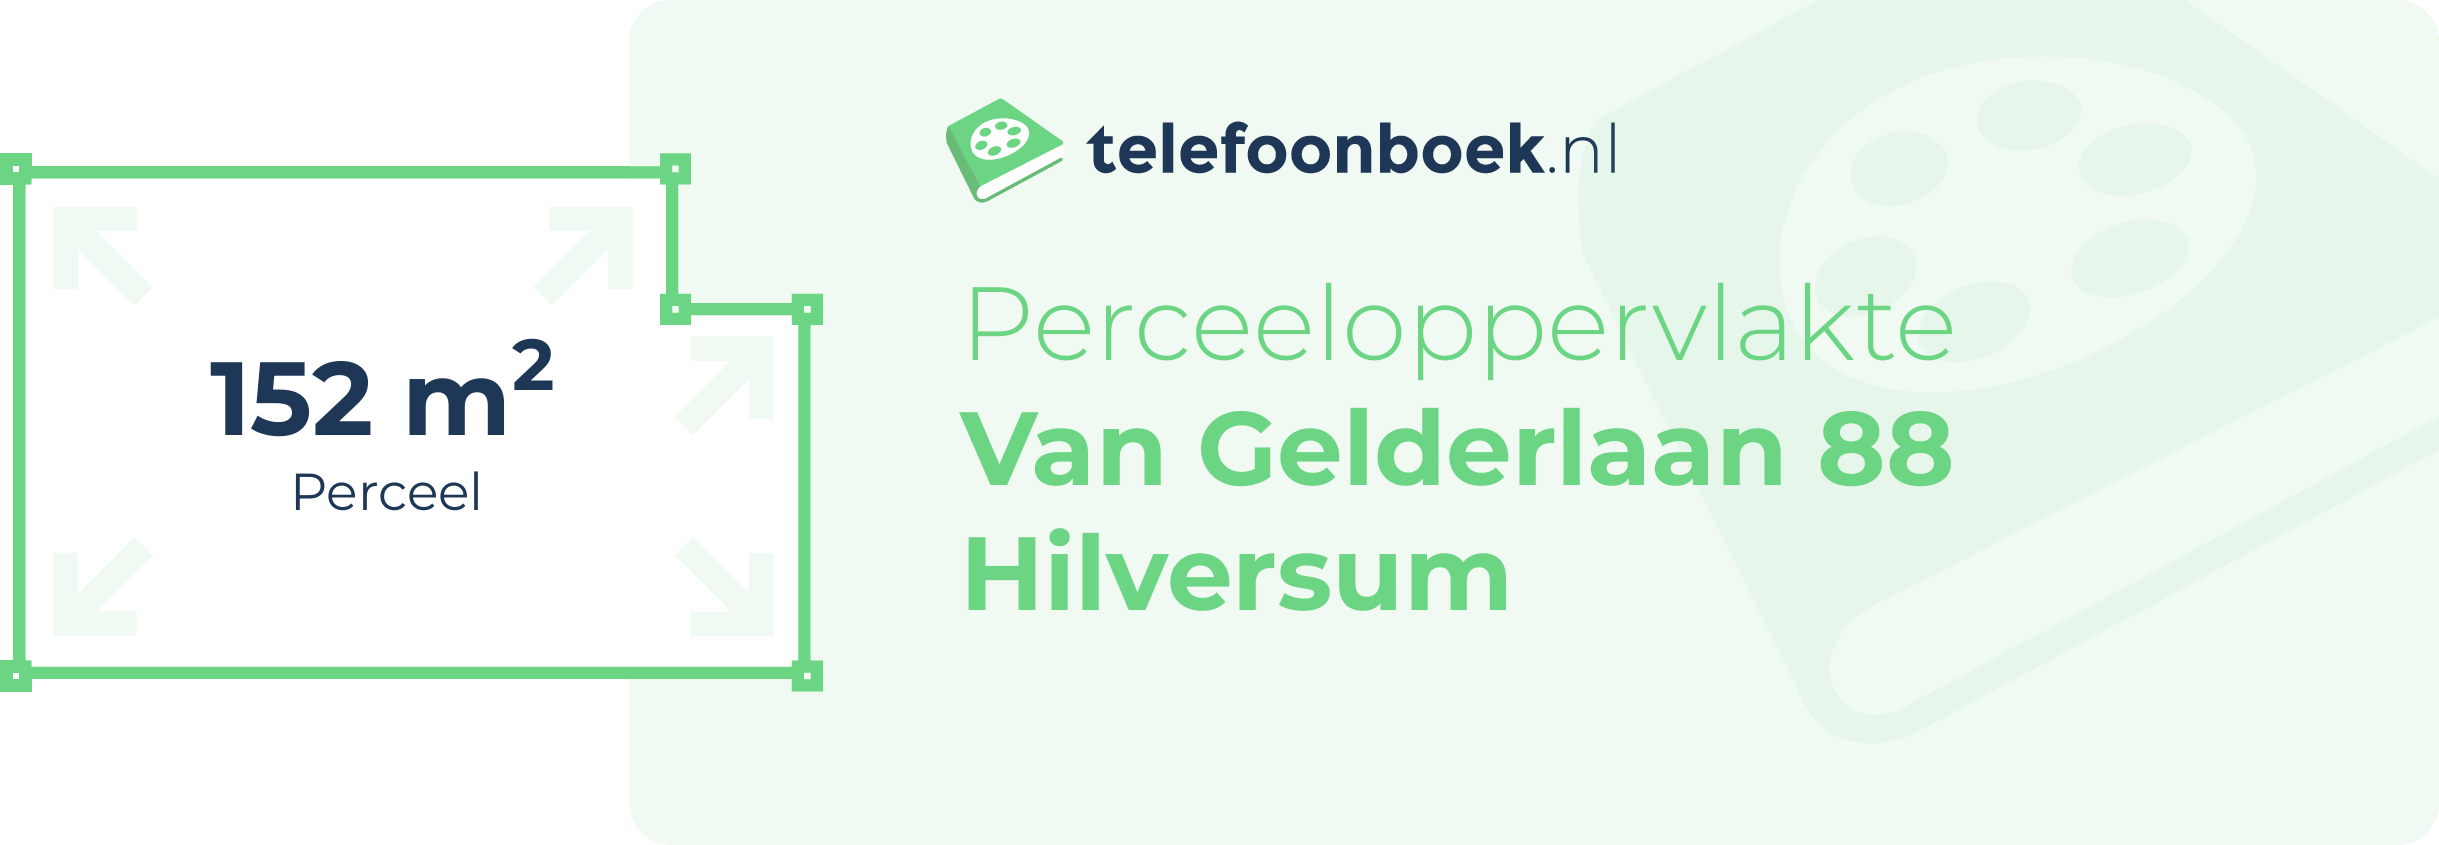 Perceeloppervlakte Van Gelderlaan 88 Hilversum